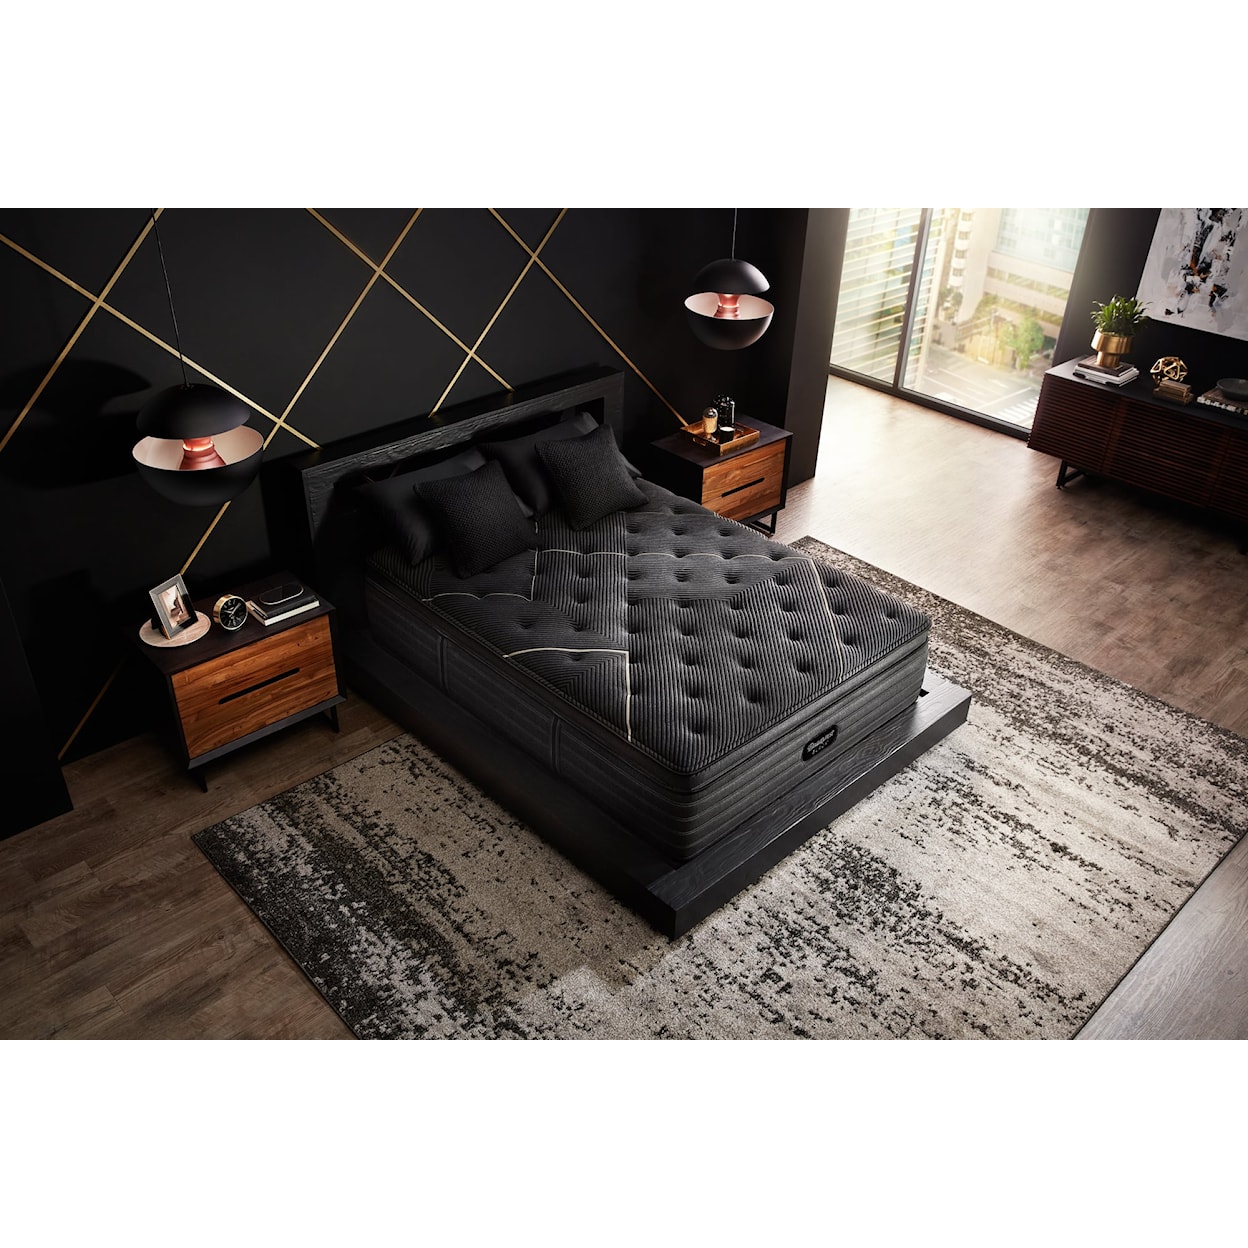 Beautyrest Beautyrest® Black K-Class 15.75" Firm Pillow Top Mattress - Twin XL